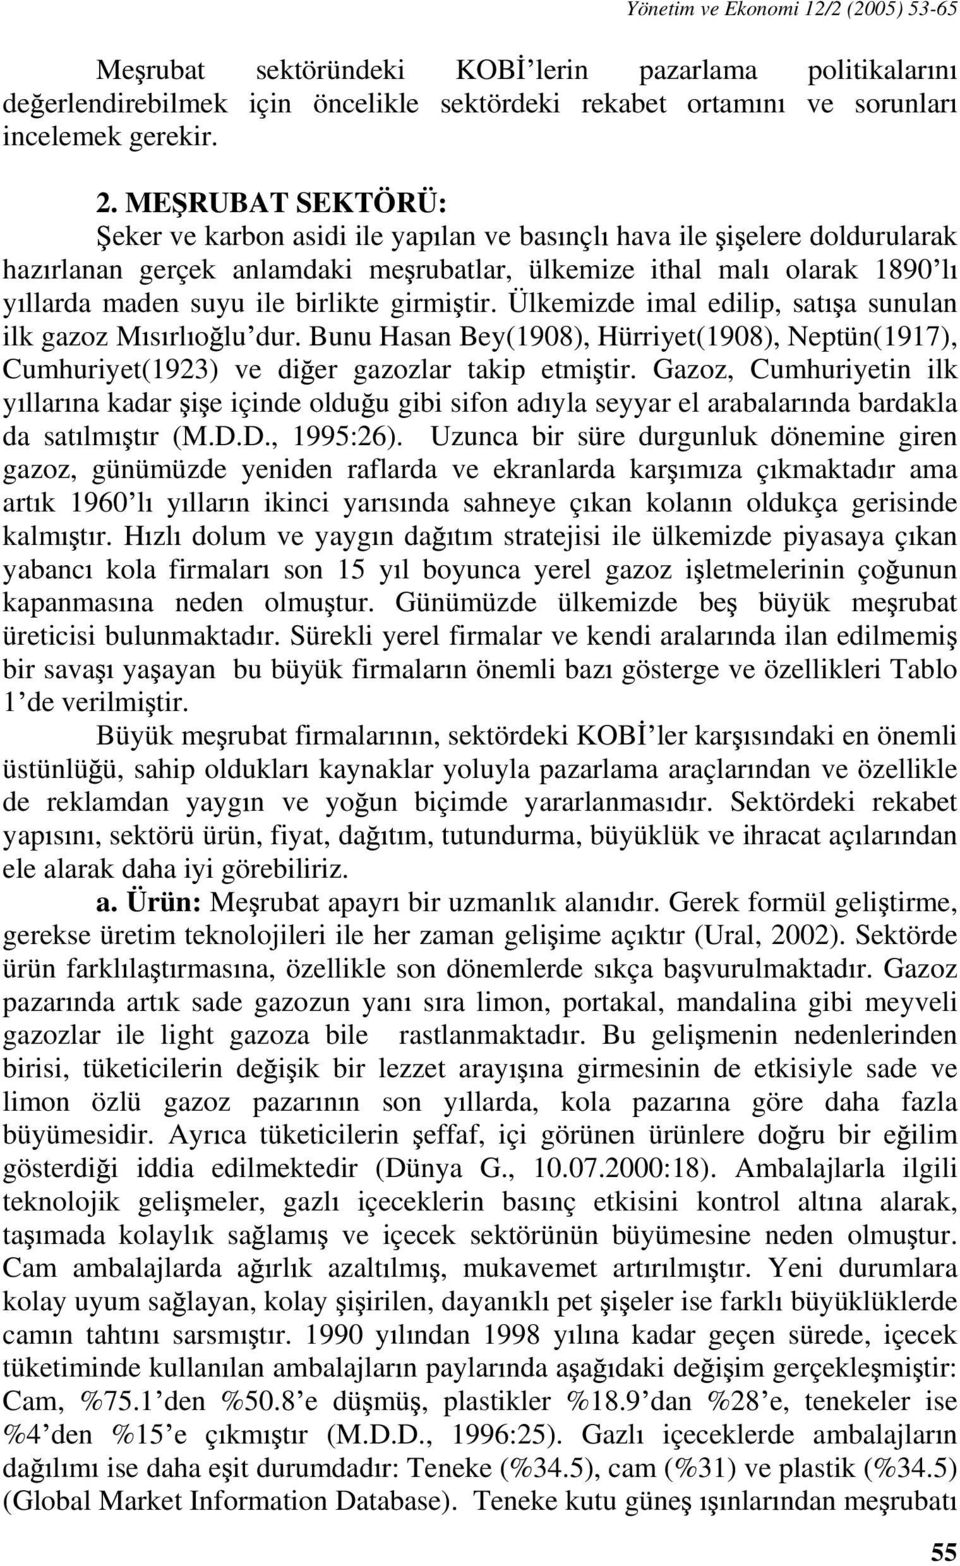 girmi tir. Ülkemizde imal edilip, sat a sunulan ilk gazoz M s rl o lu dur. Bunu Hasan Bey(1908), Hürriyet(1908), Neptün(1917), Cumhuriyet(1923) ve di er gazozlar takip etmi tir.